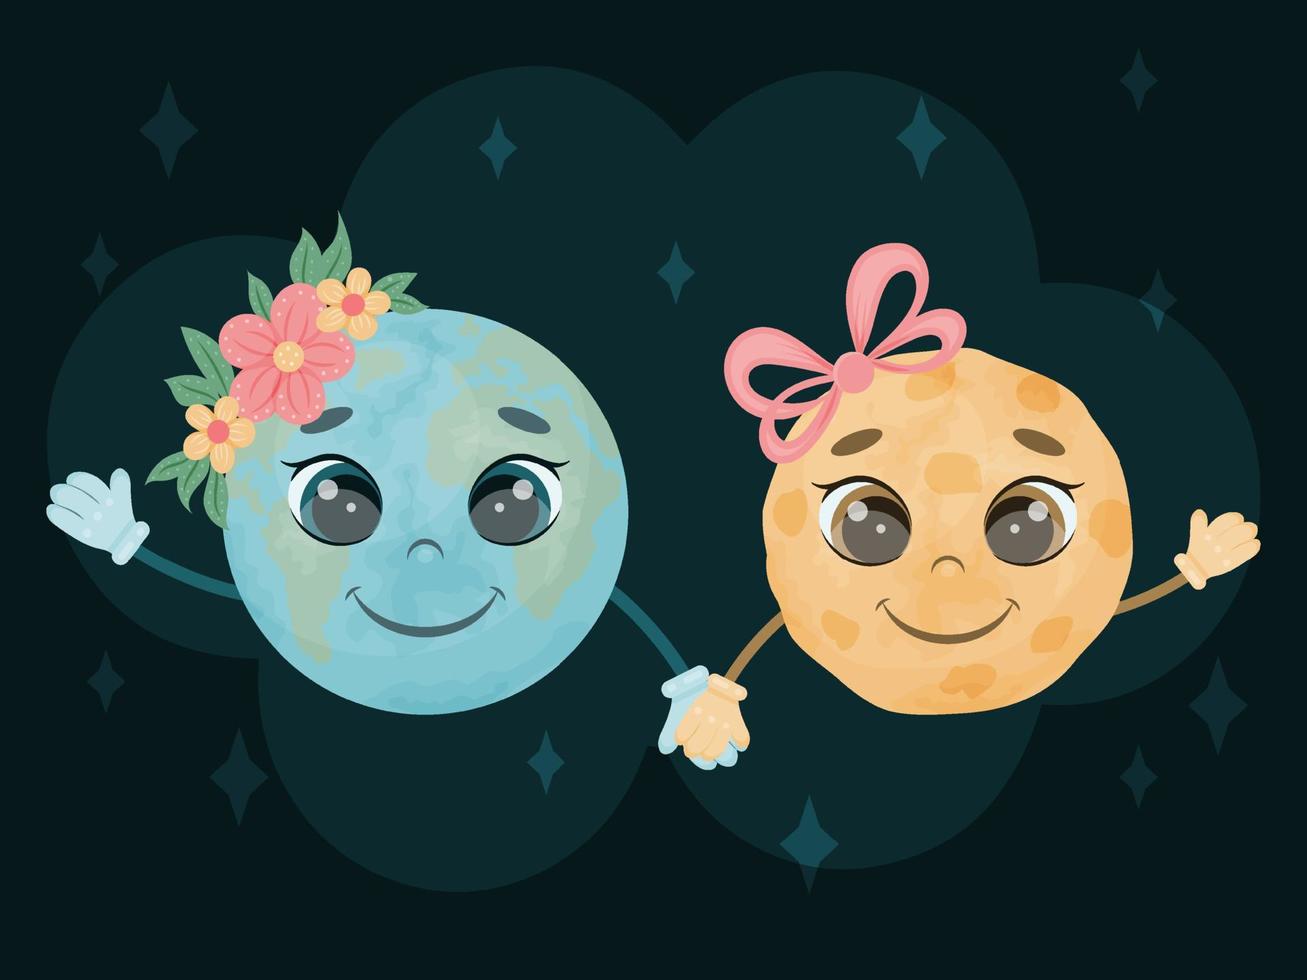 söta karaktärer. saga jorden och månen håller hand och ler ut i rymden. en barnbild. vektor illustration. tecknad stil.